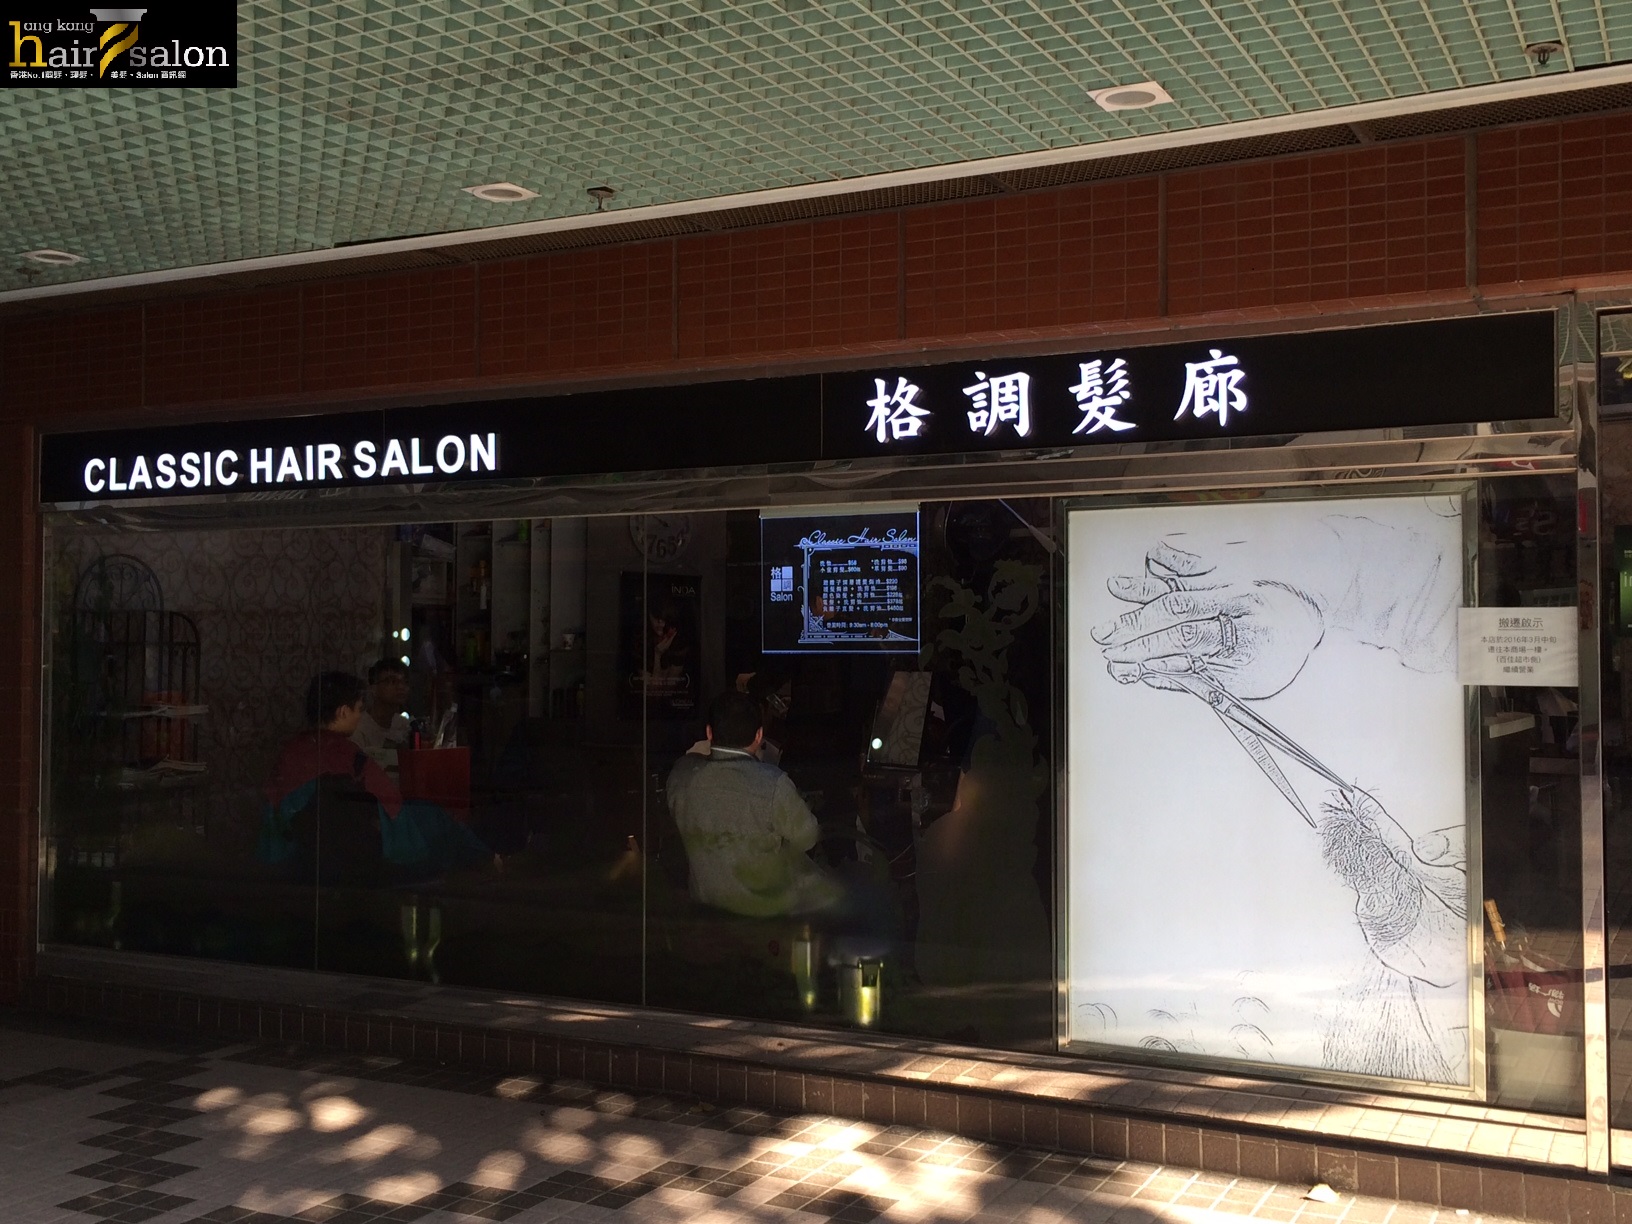 Hair Colouring: 格調髮廊 Classic Hair Salon